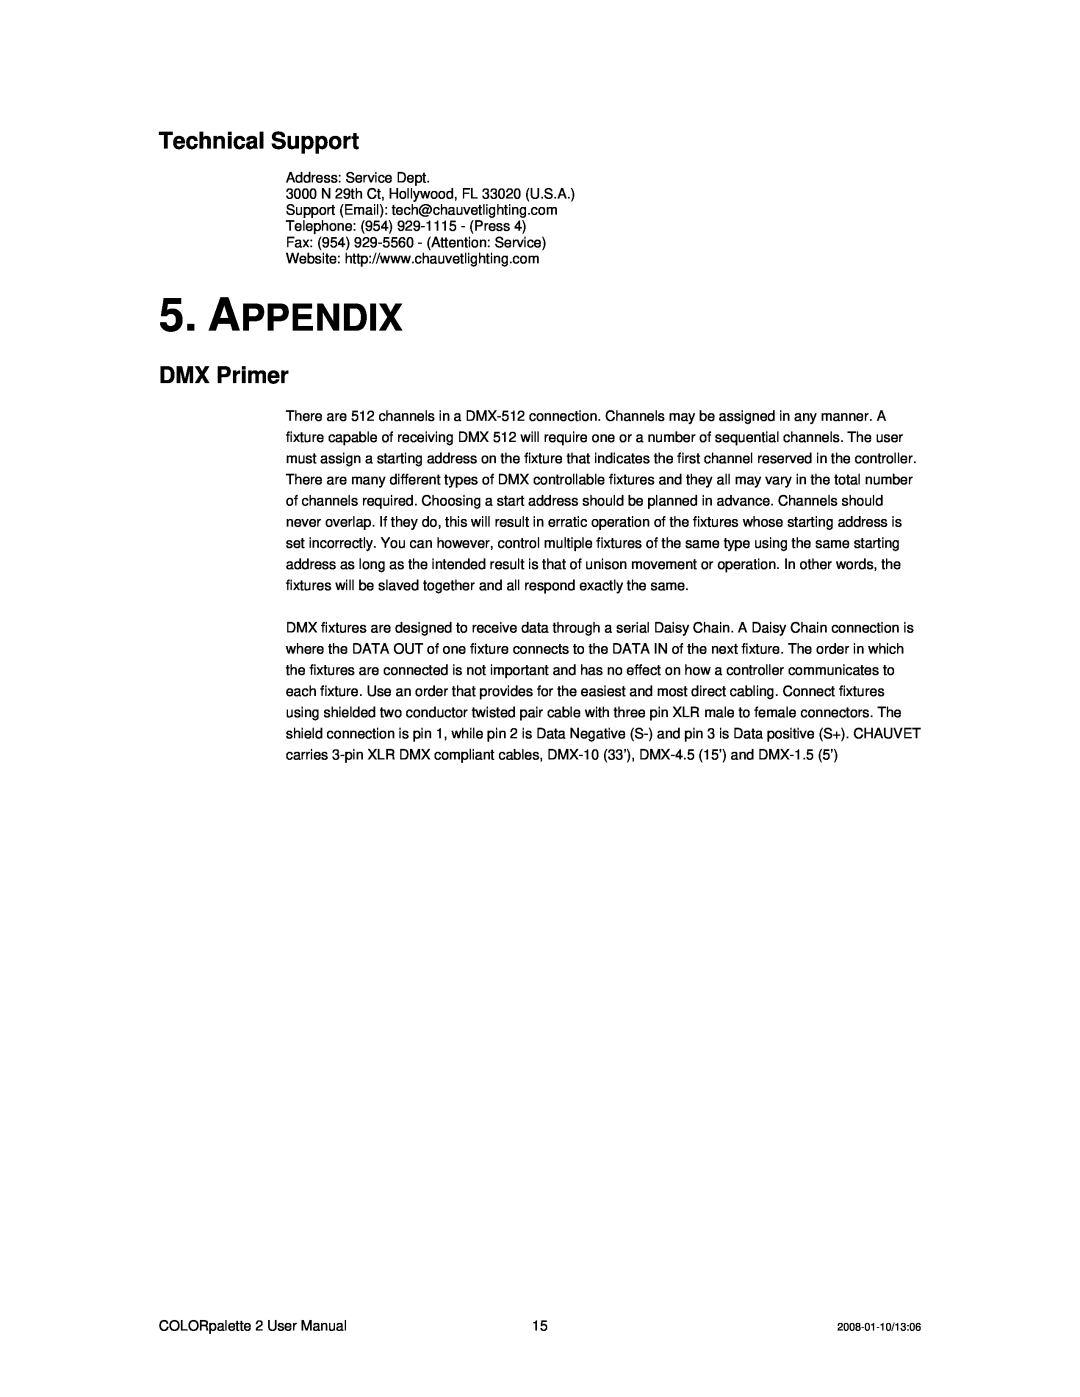 Chauvet DMX512 user service Appendix, Technical Support, DMX Primer 